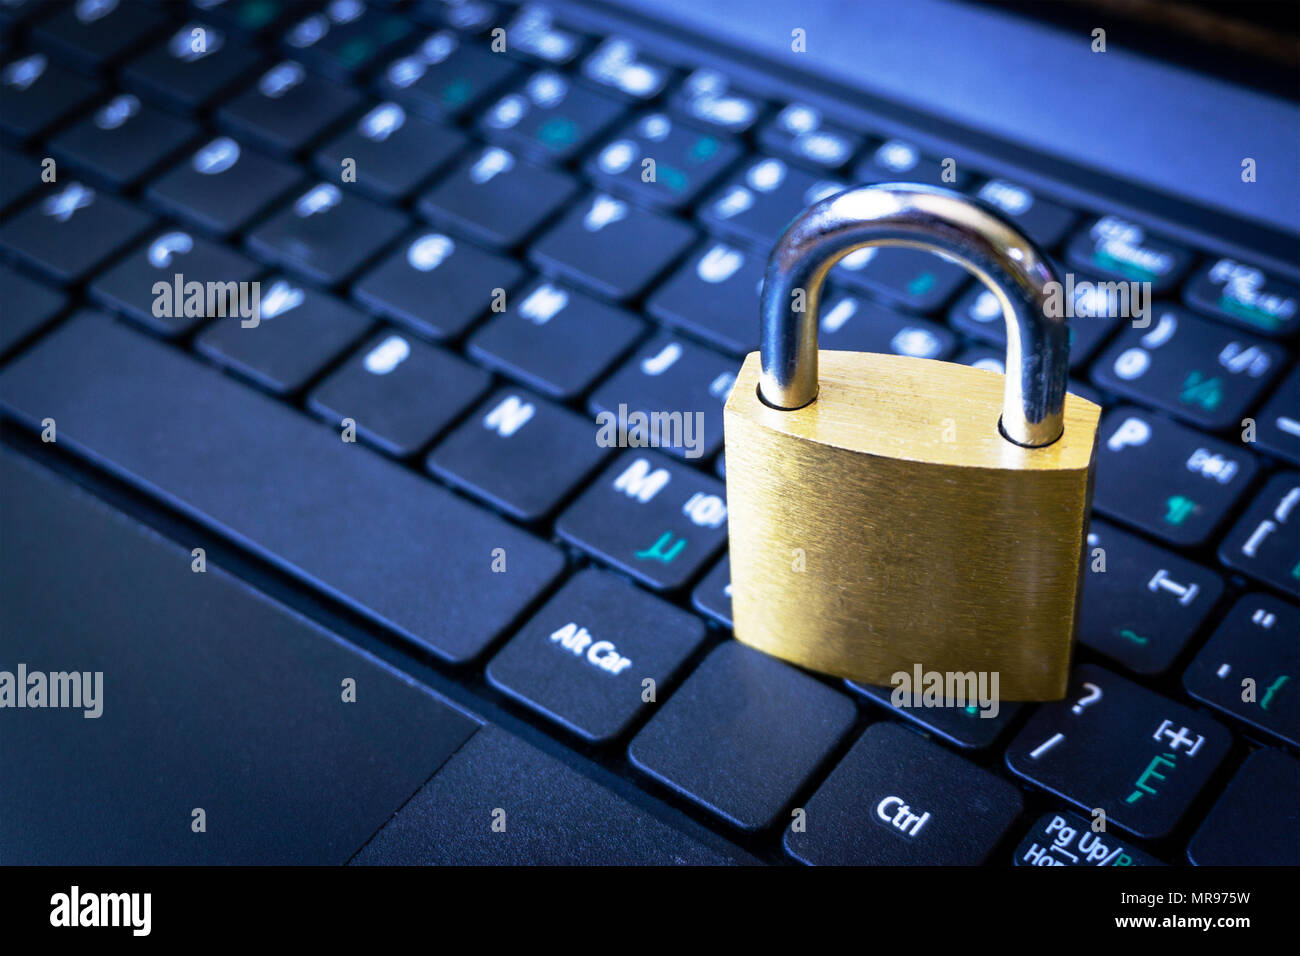 Goldene Vorhängeschloss auf dem Computer Laptop Tastatur mit kopieren. Konzept der Internet Security, Datenschutz, Computerkriminalität Verhinderung. Selektive konzentrieren. Stockfoto